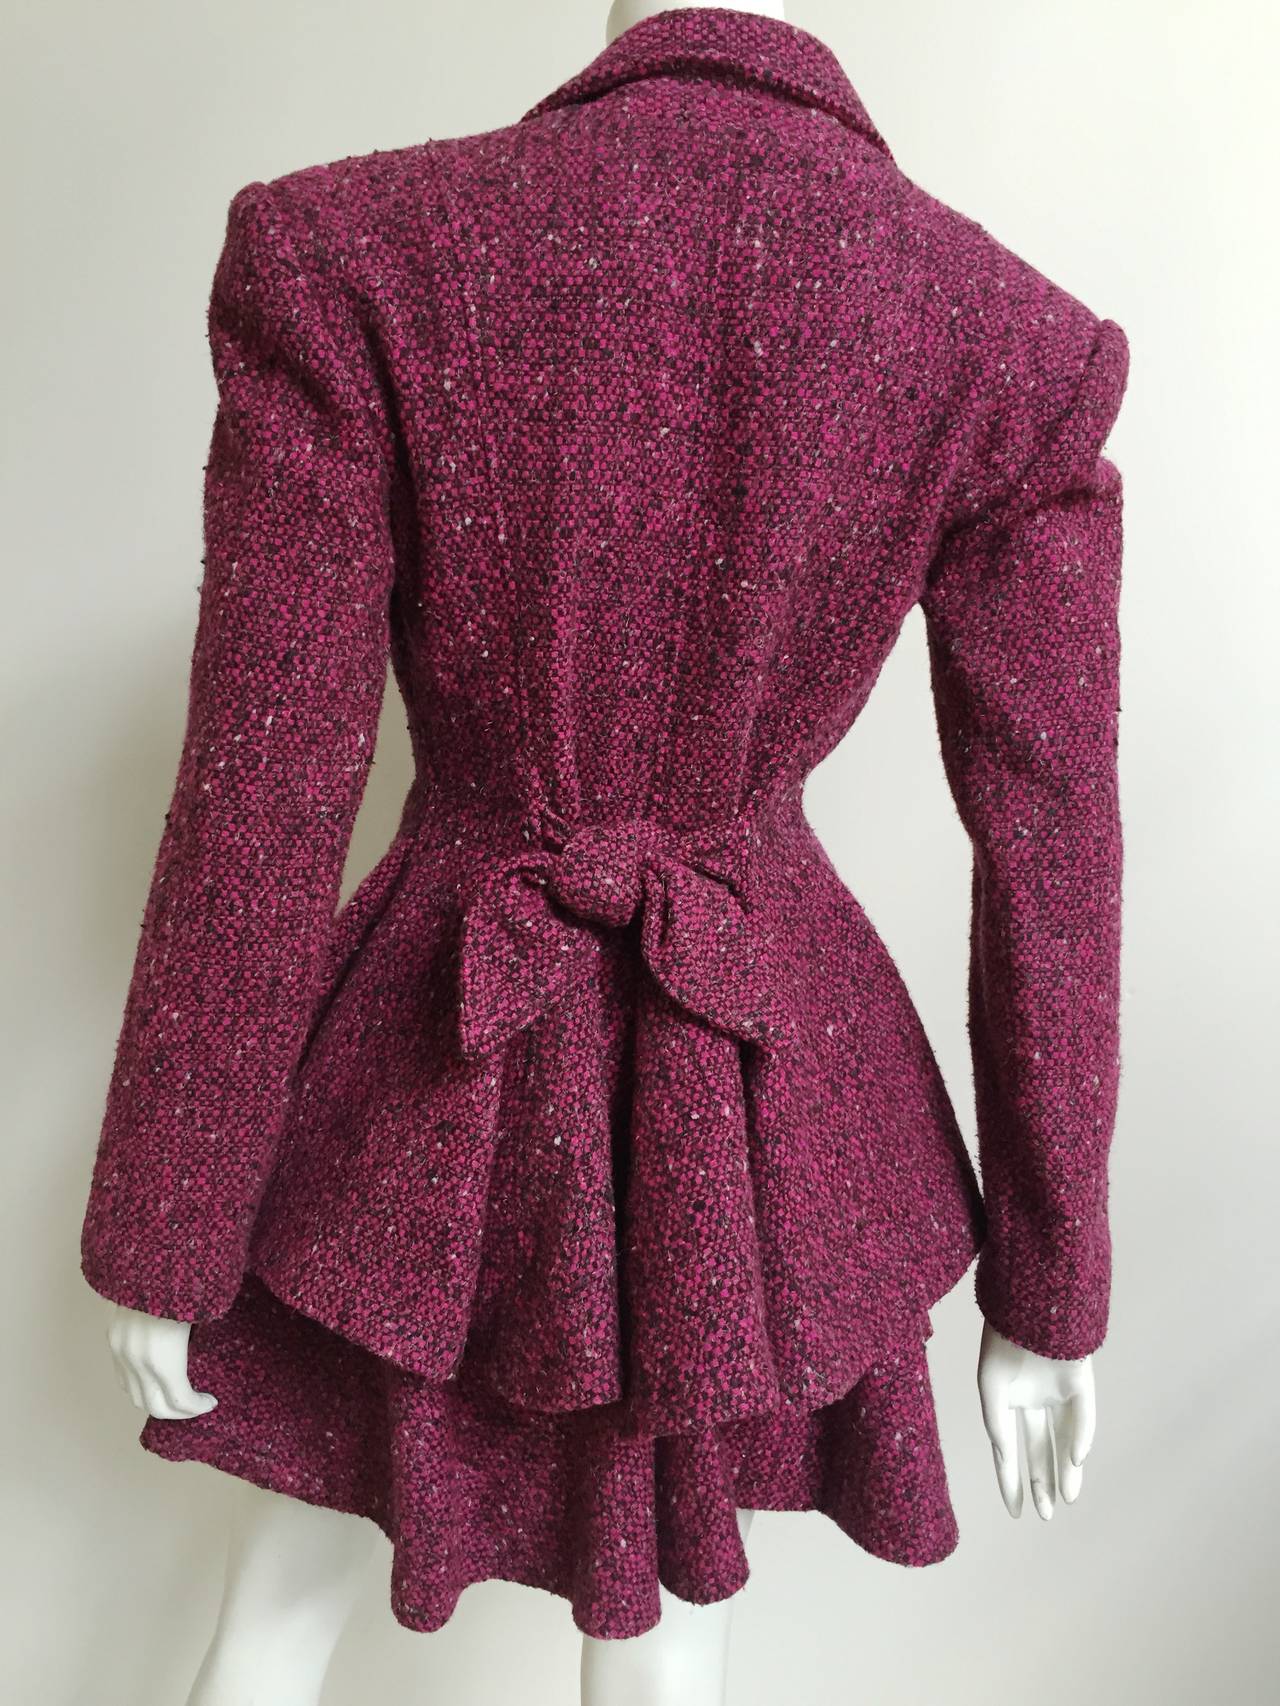 Patrick Kelly Paris 1988 wool suit size 4. 2